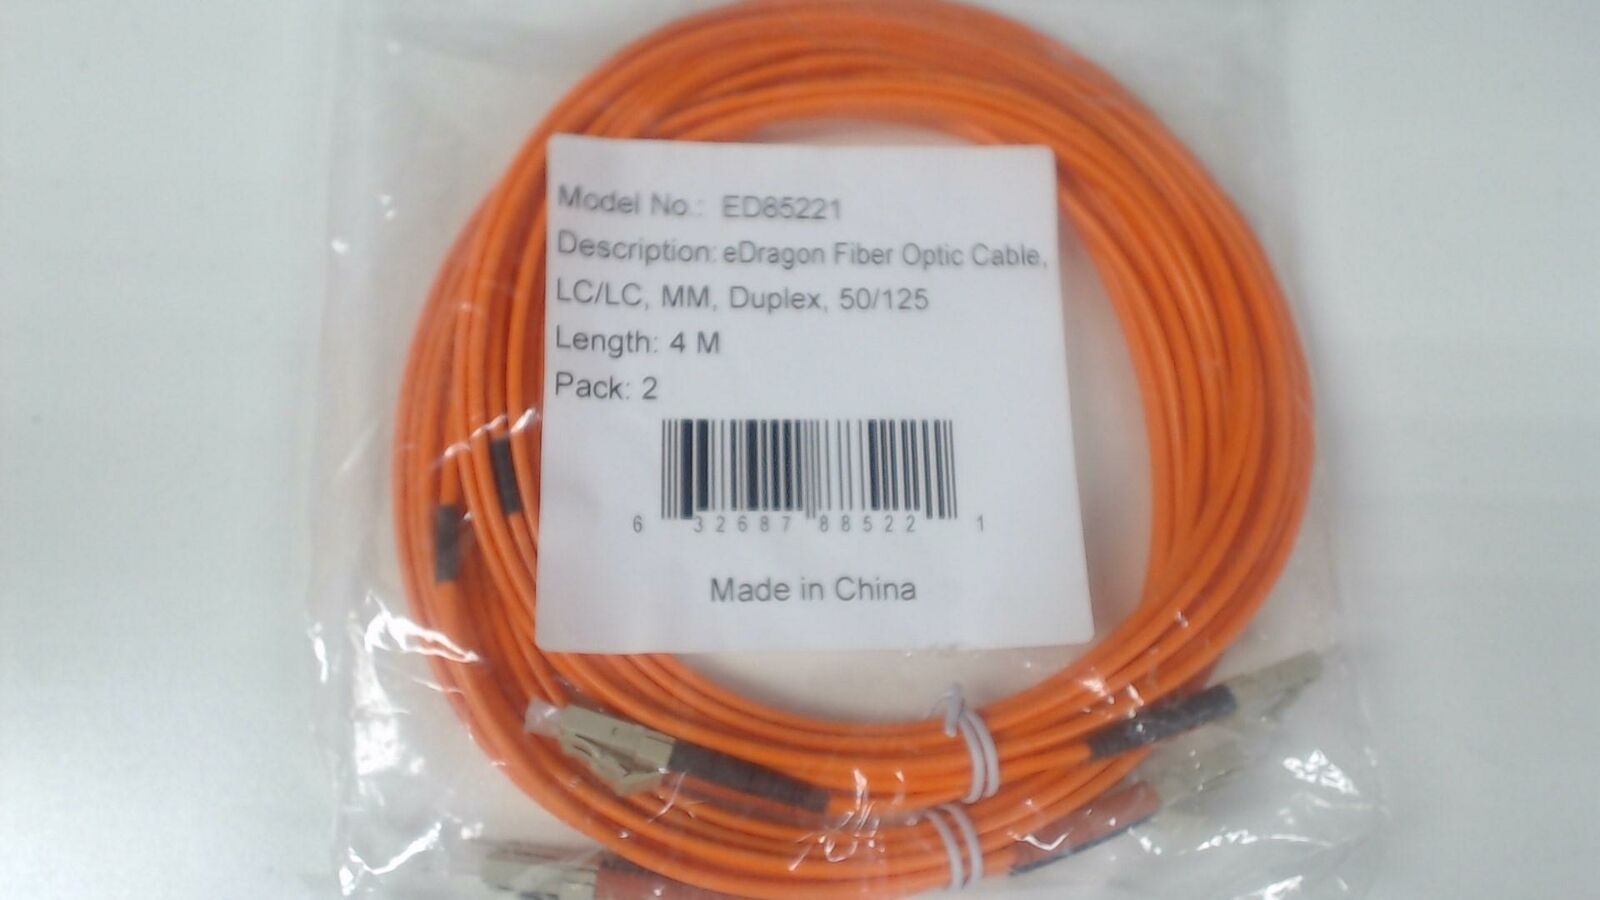 Pack of 2: 4m LC / LC Muiltimode Duplex 50/125 - Orange Fiber Cable -